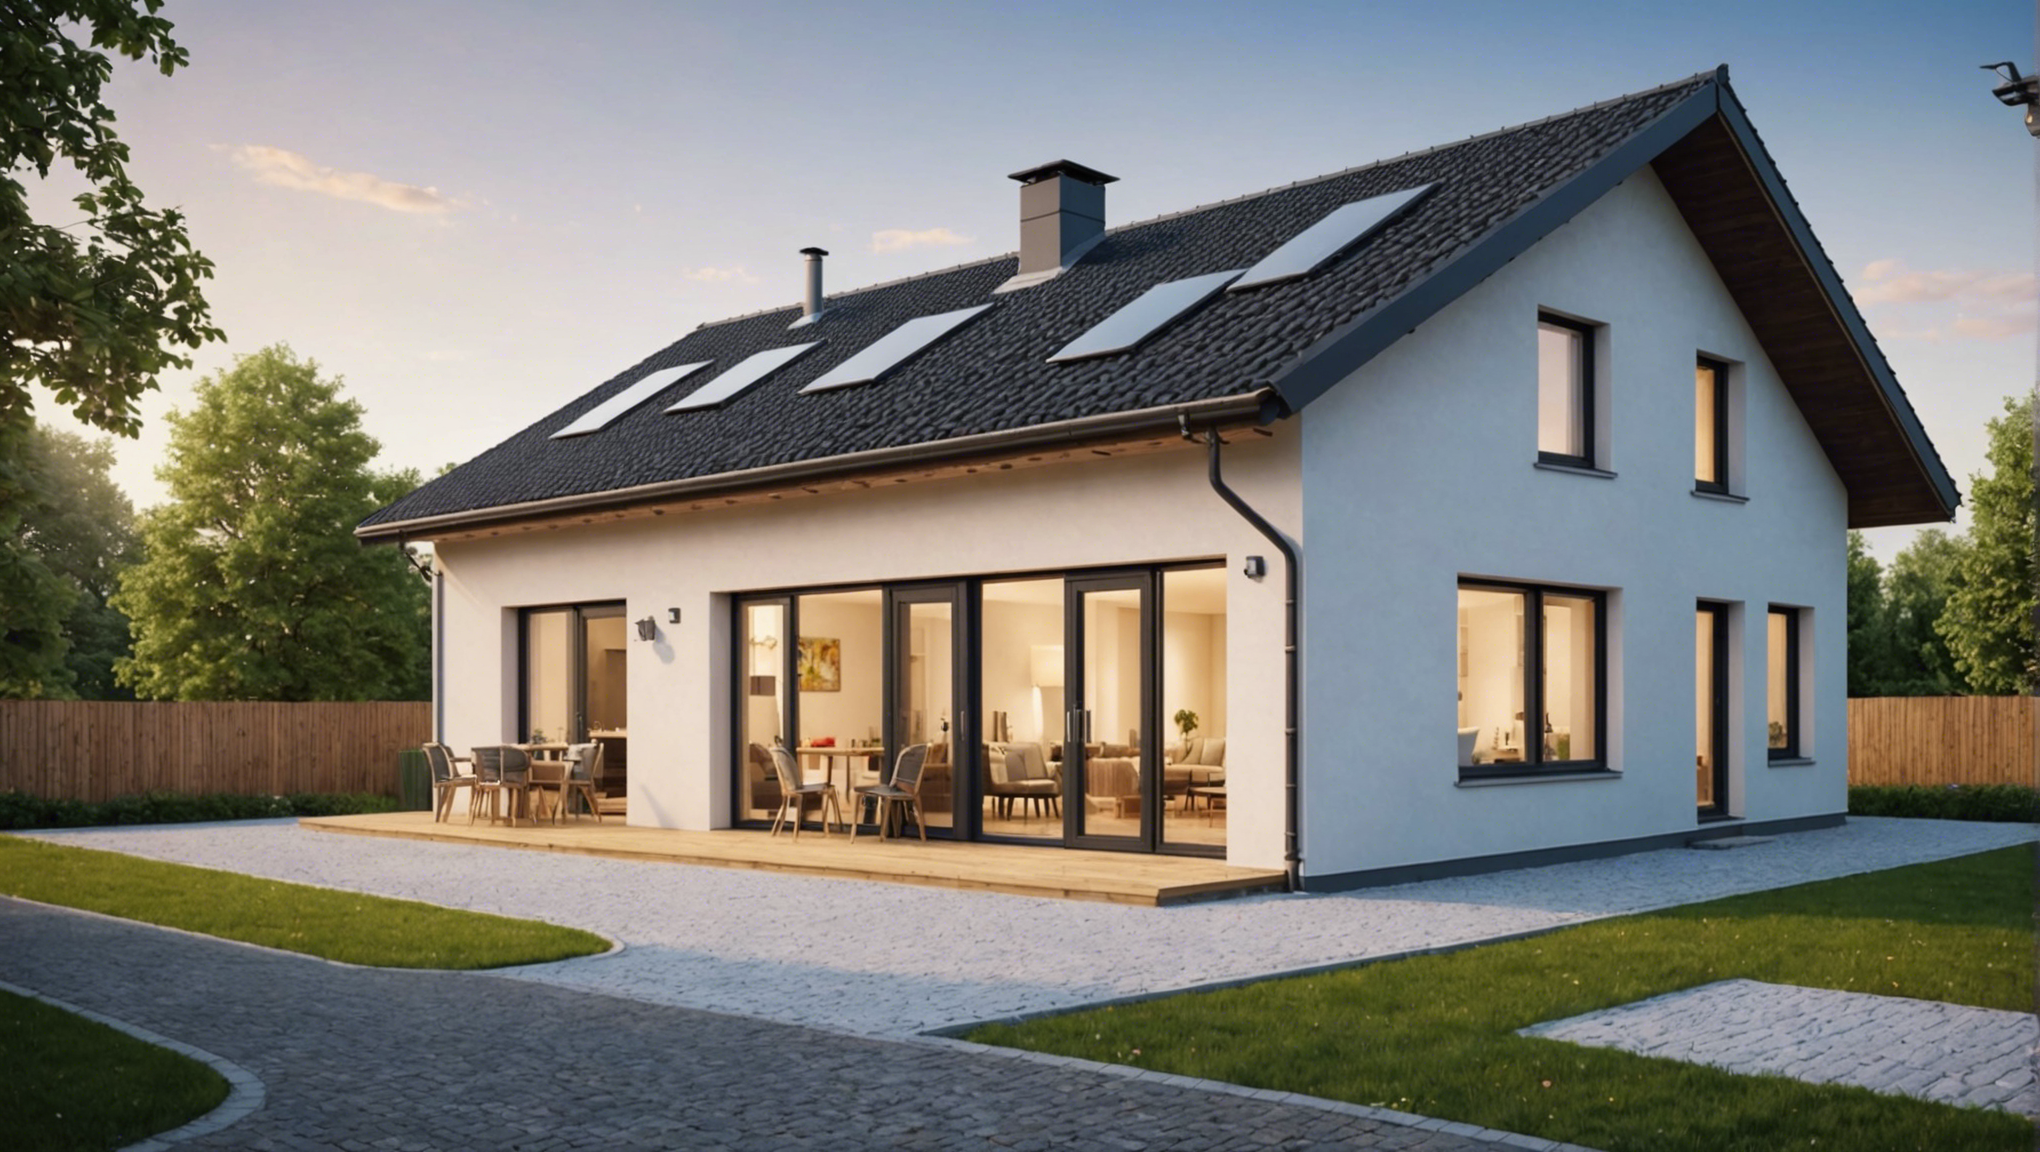 découvrez comment bénéficier de l'aide isolation à 1 euro pour améliorer l'efficacité énergétique de votre logement avec nos conseils pratiques et solutions adaptées.